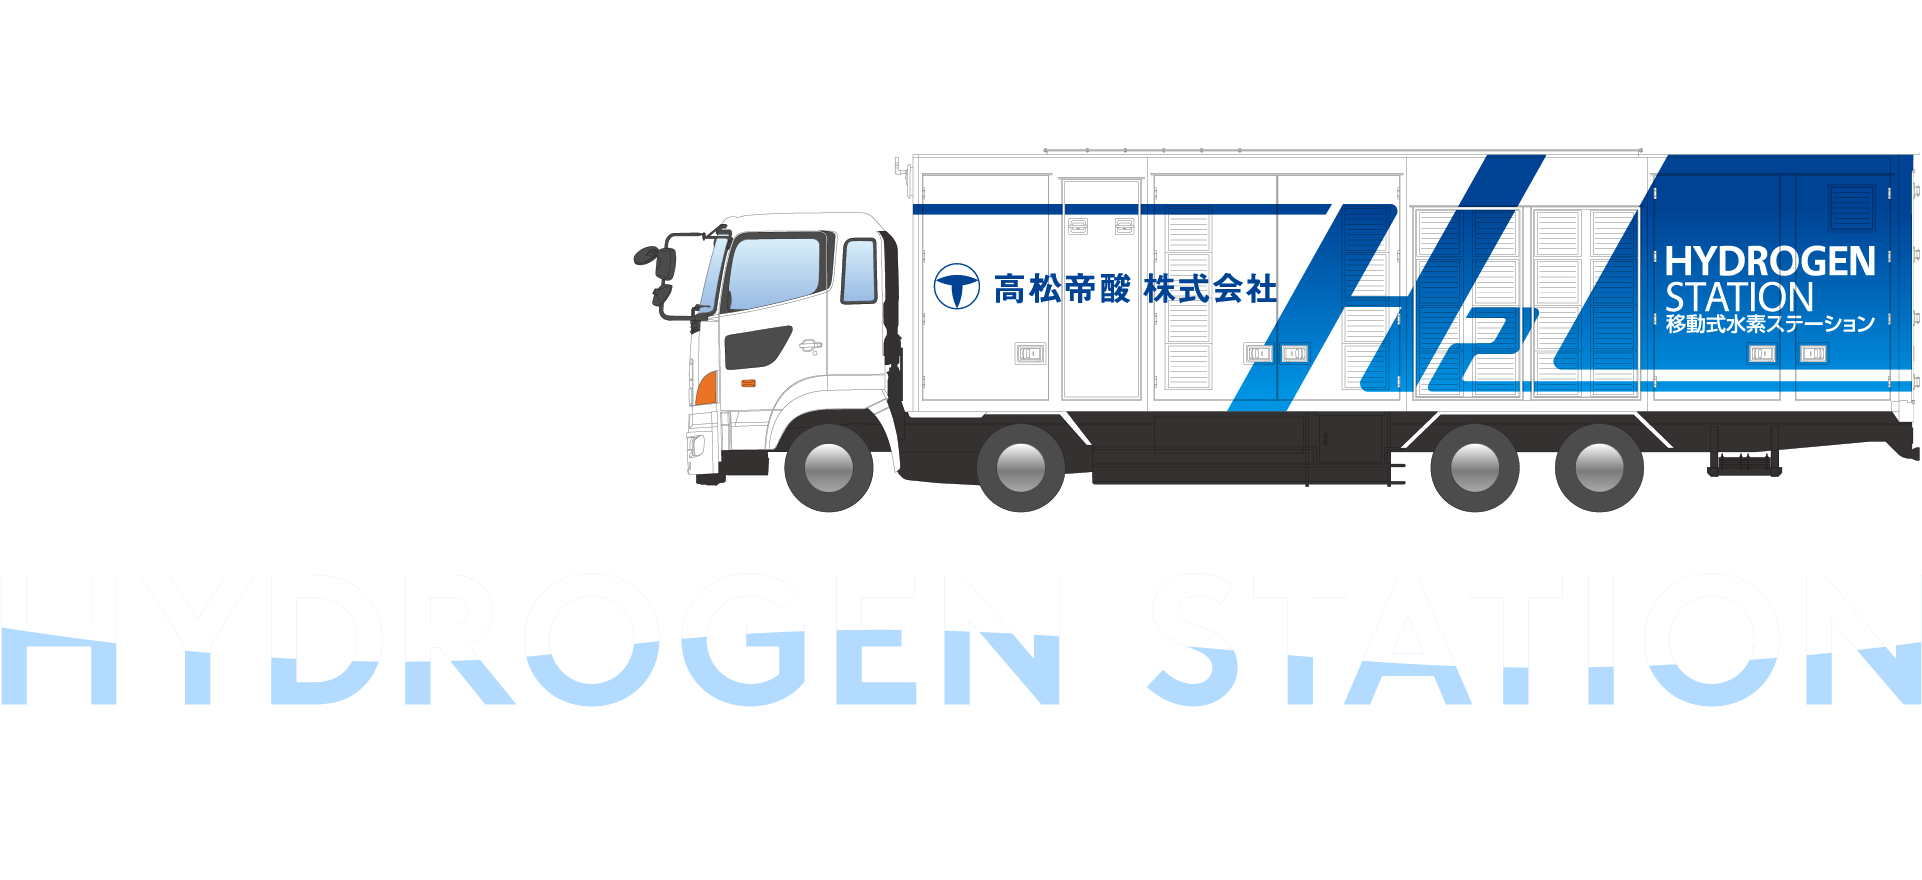 高松帝酸移動式水素ステーション 4.17OPEN